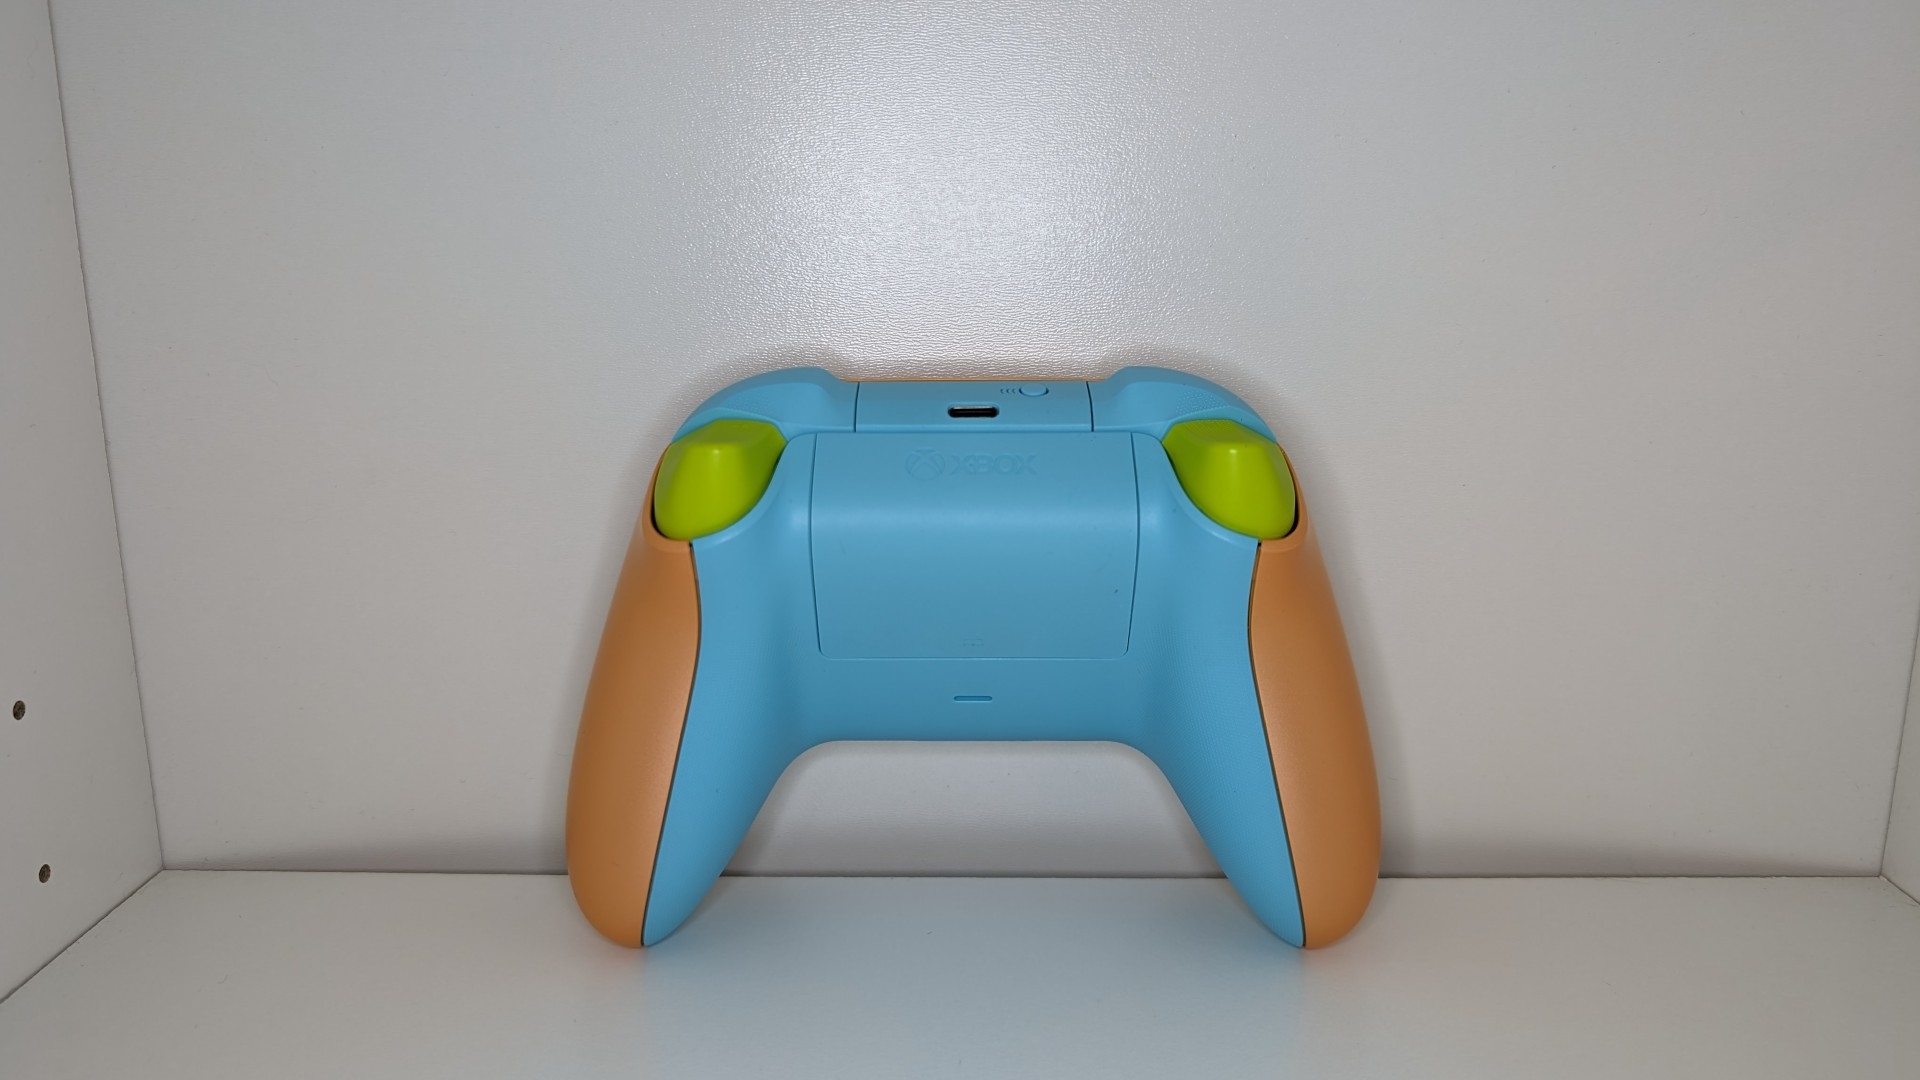 Image d'examen de la manette sans fil Xbox montrant le profil arrière de la manette.